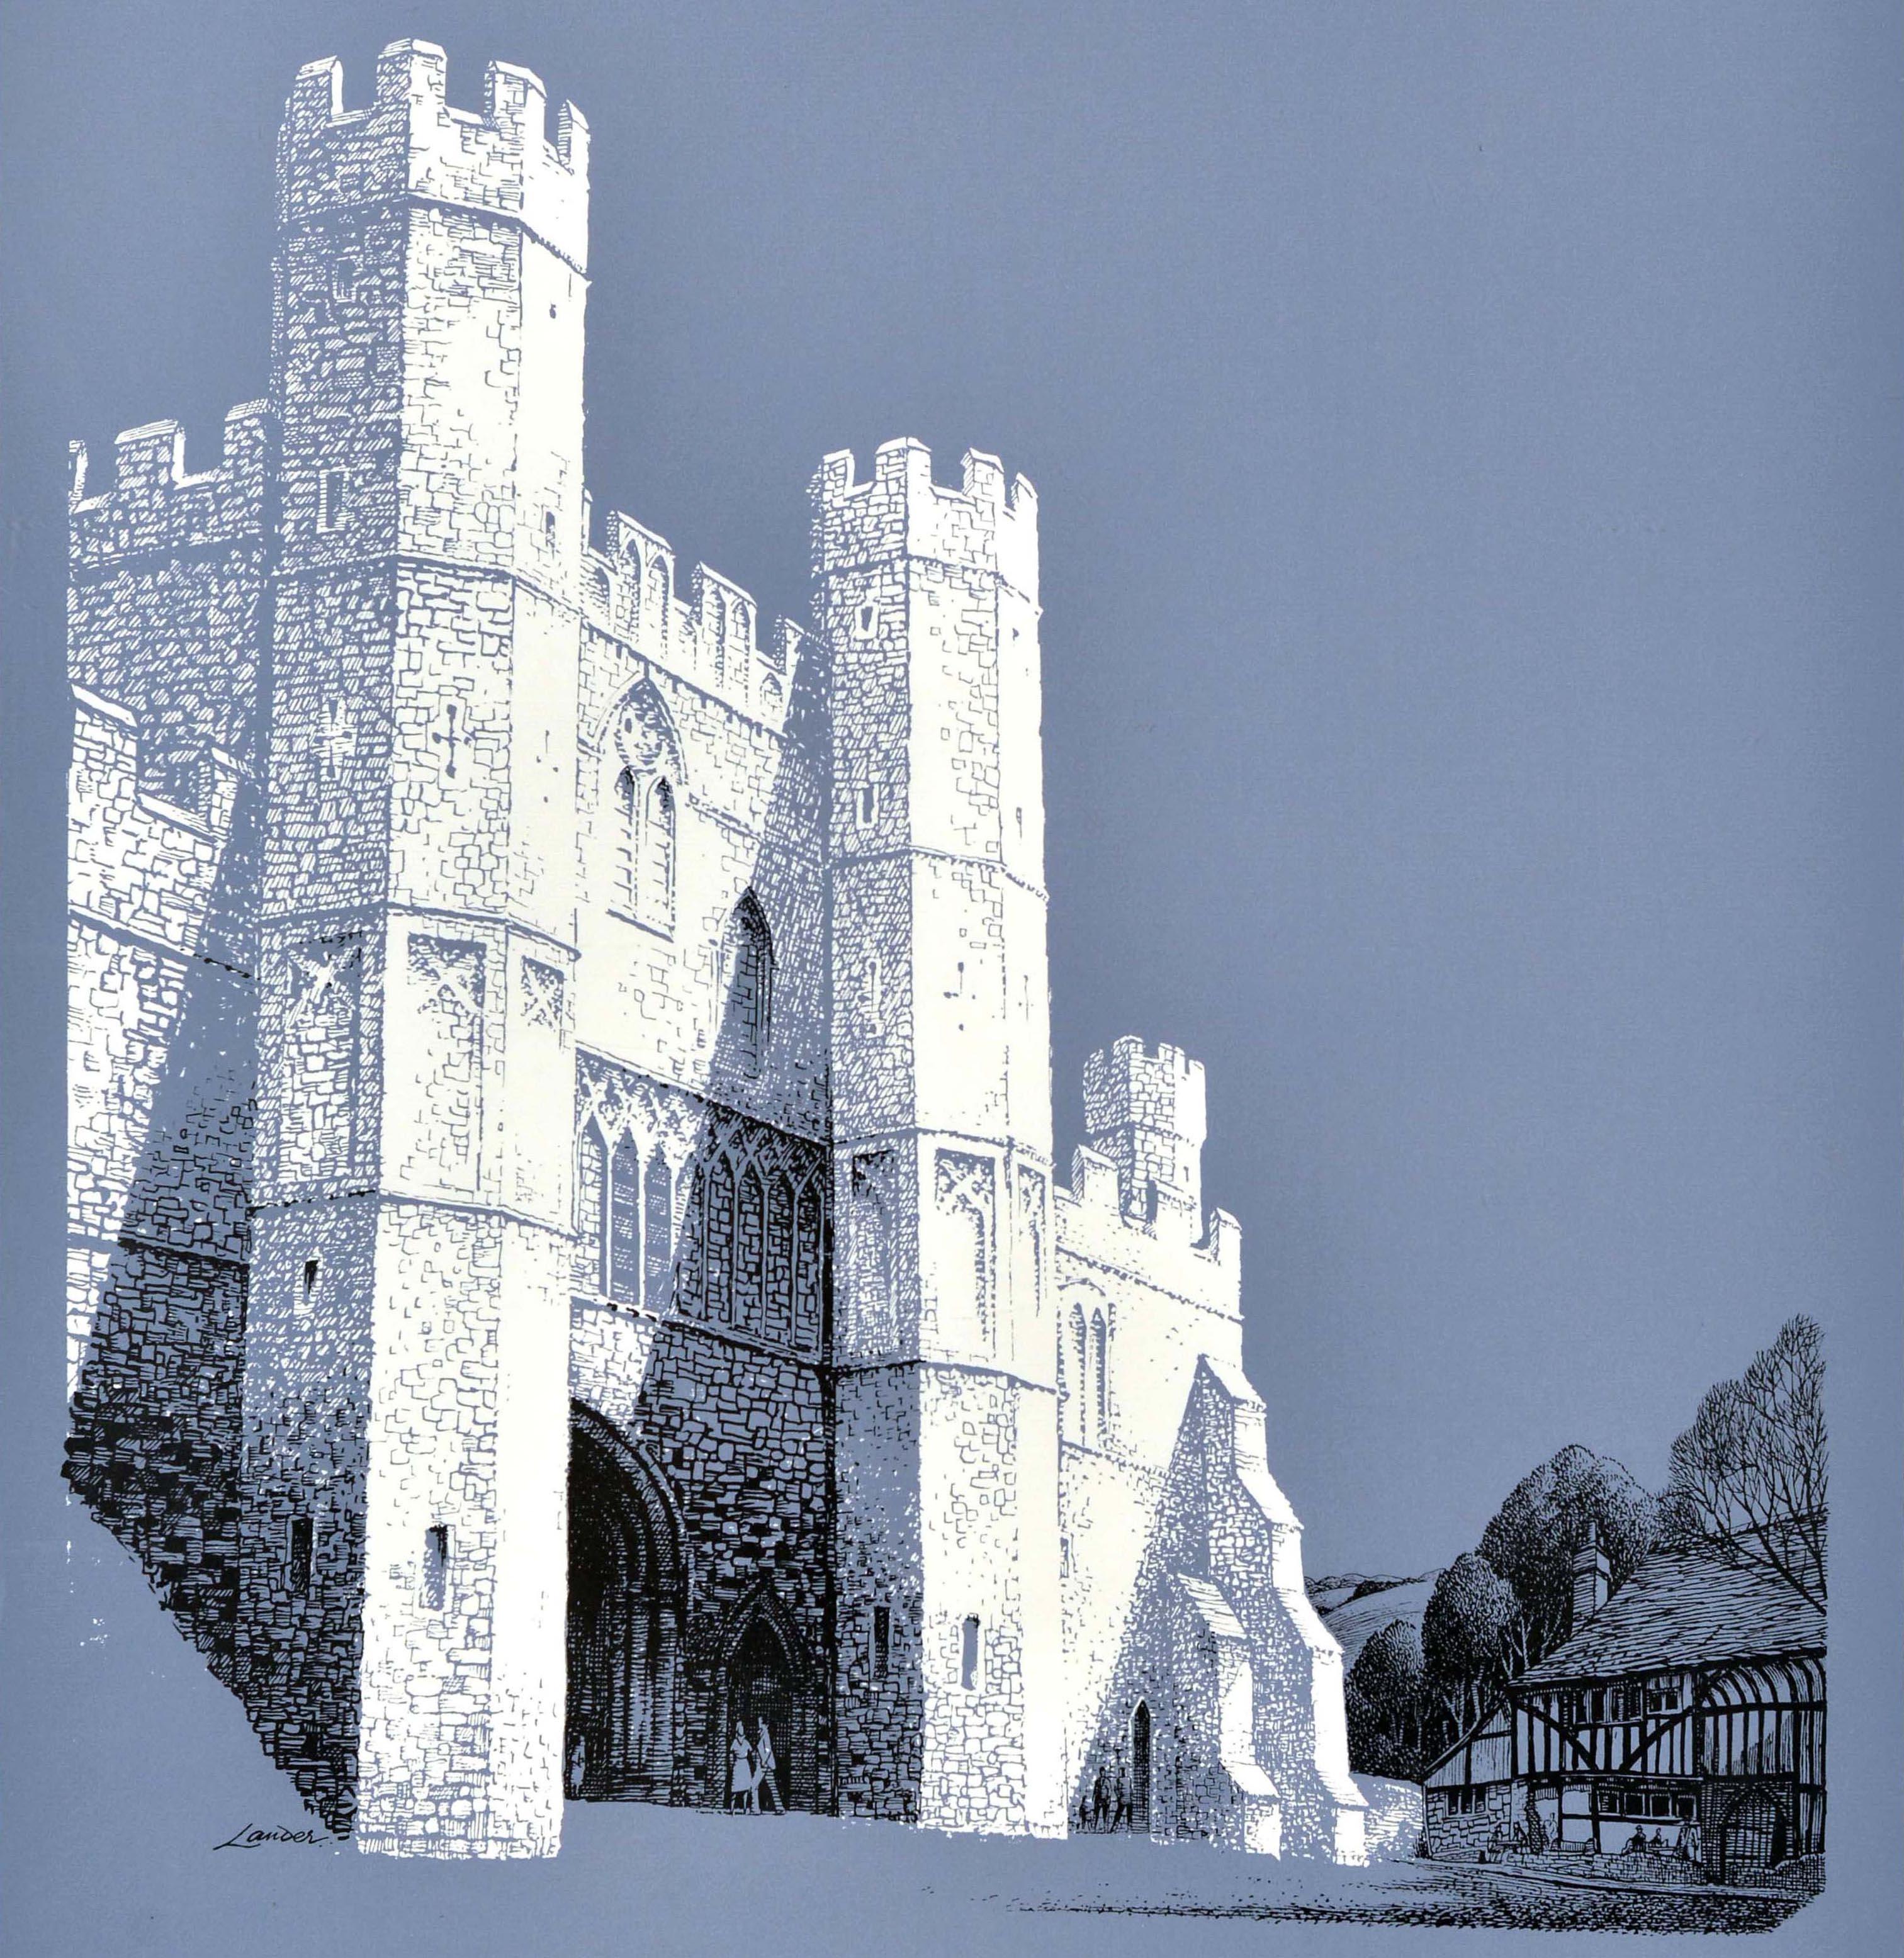 Affiche originale de voyage en train - Visit Battle - réalisée par le célèbre artiste commercial et créateur d'affiches Reginald Montague Lander (1913-1980) représentant des personnes visitant l'abbaye historique de Battle dans le Sussex,